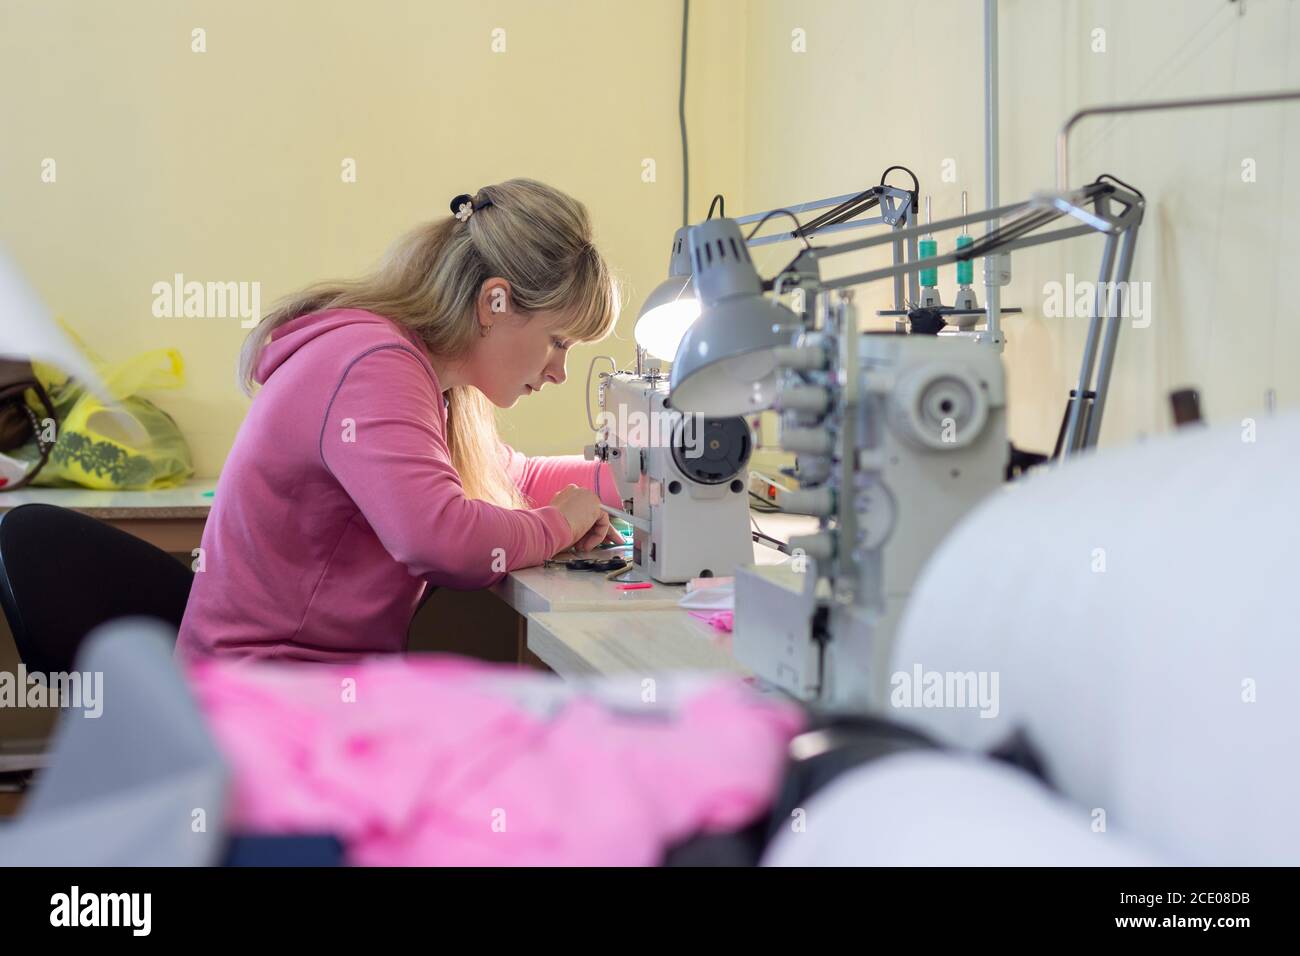 Arbeiter in der Nähwerkstatt näht auf einer professionellen Nähmaschine Stockfoto